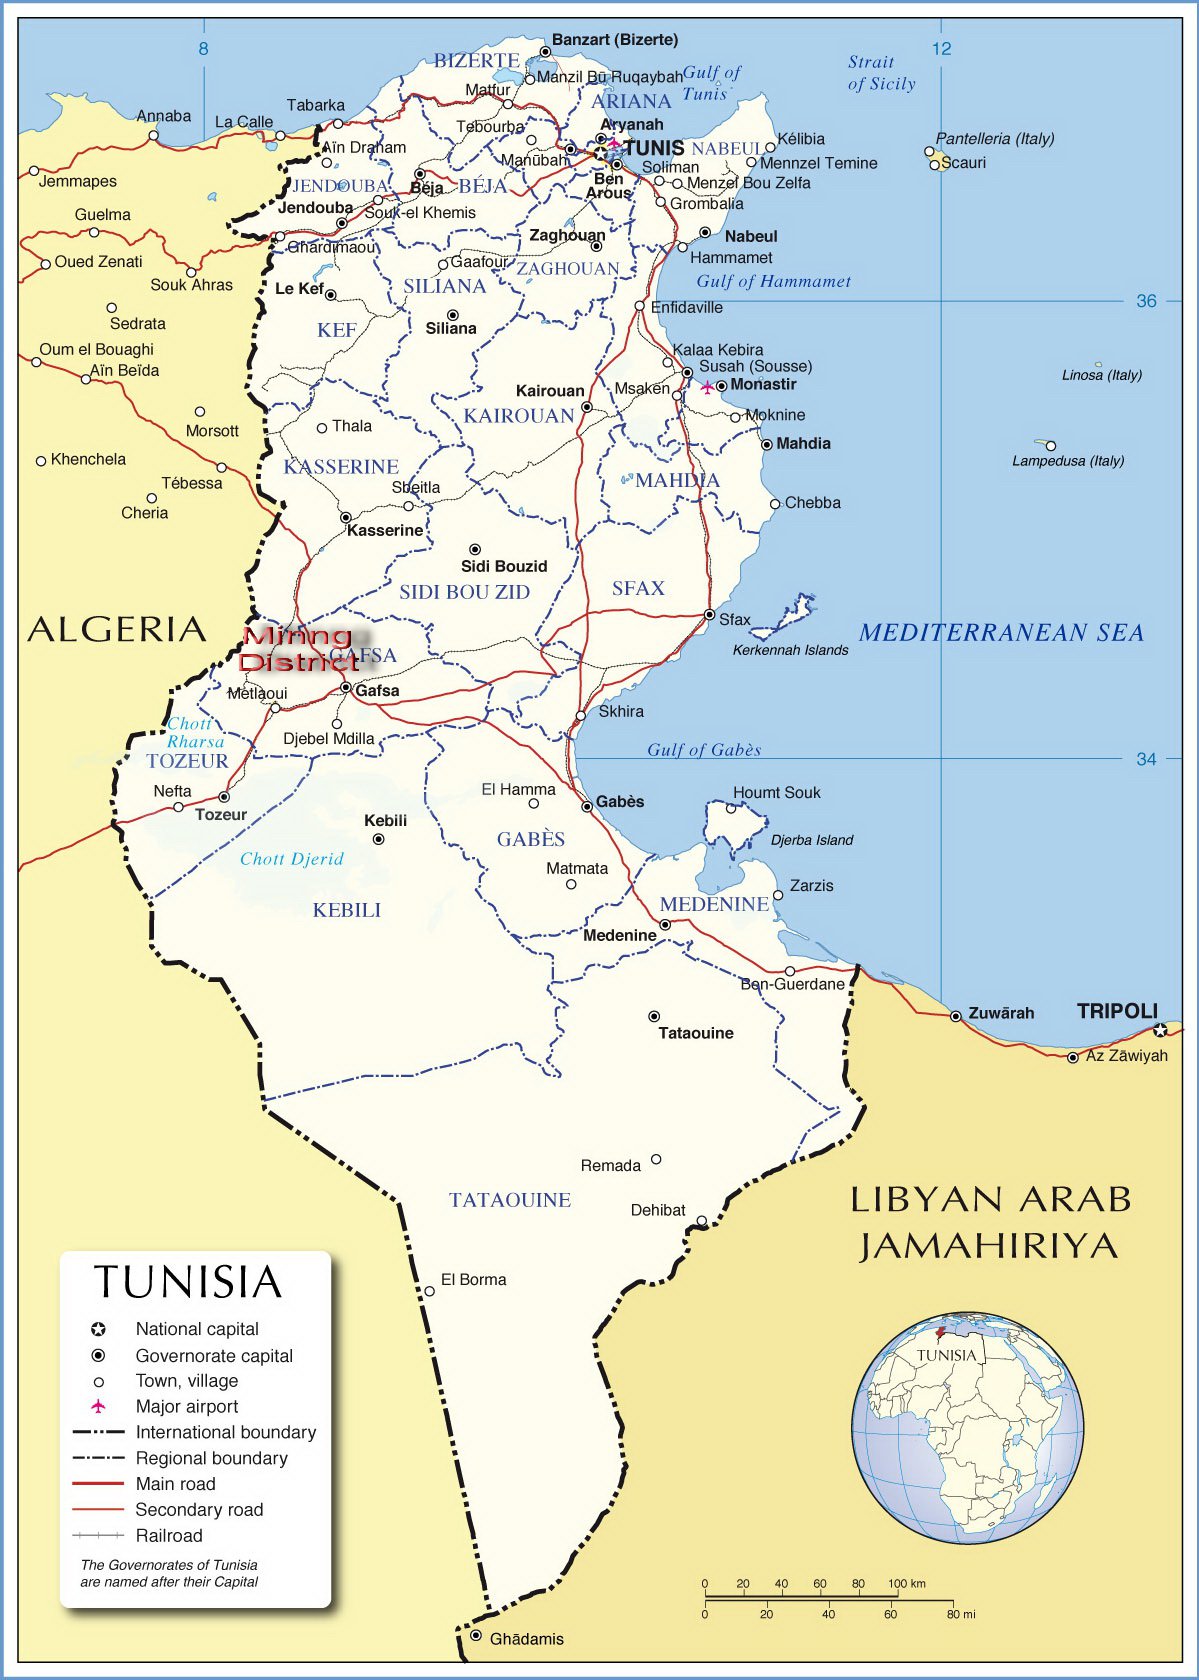 Казино туниса на карте шангрила казино онлайн